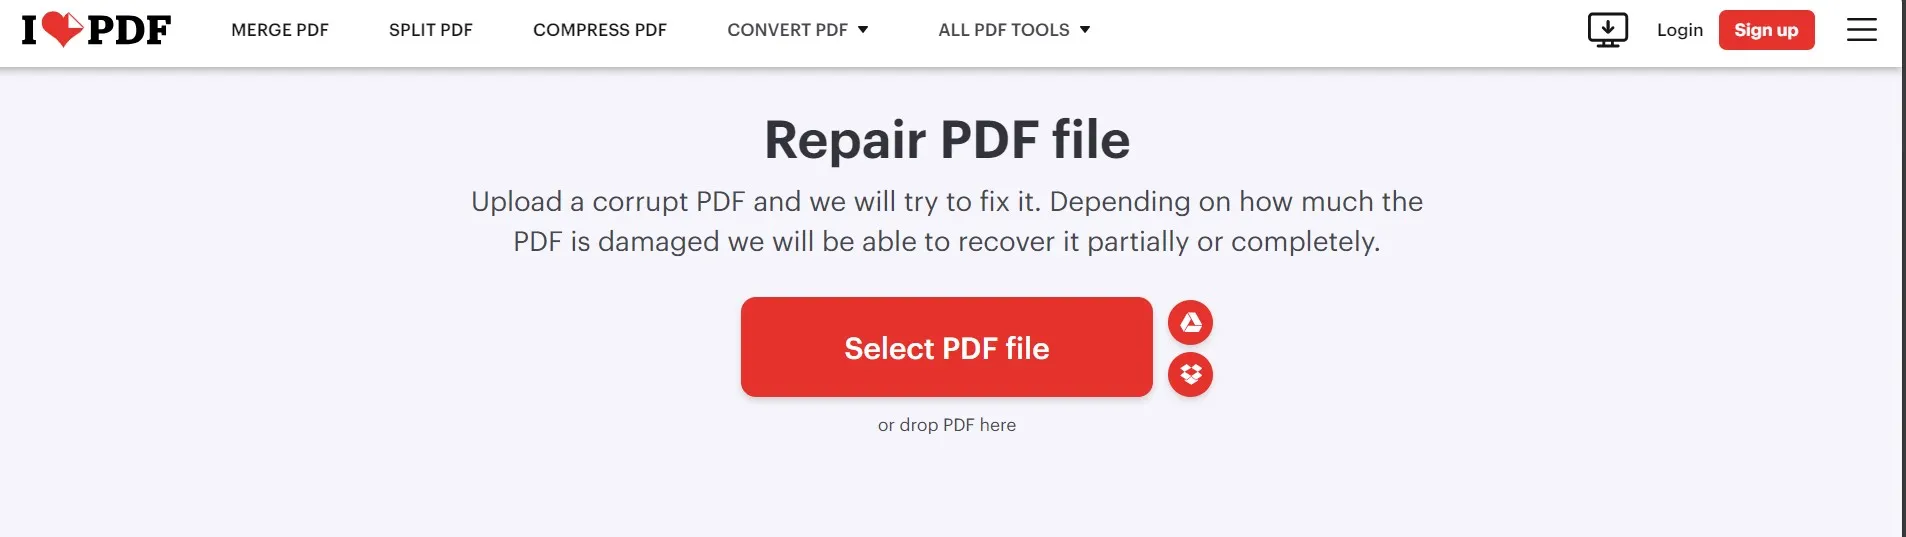 Il riquadro di anteprima del pdf non funziona, ripara il pdf corrotto